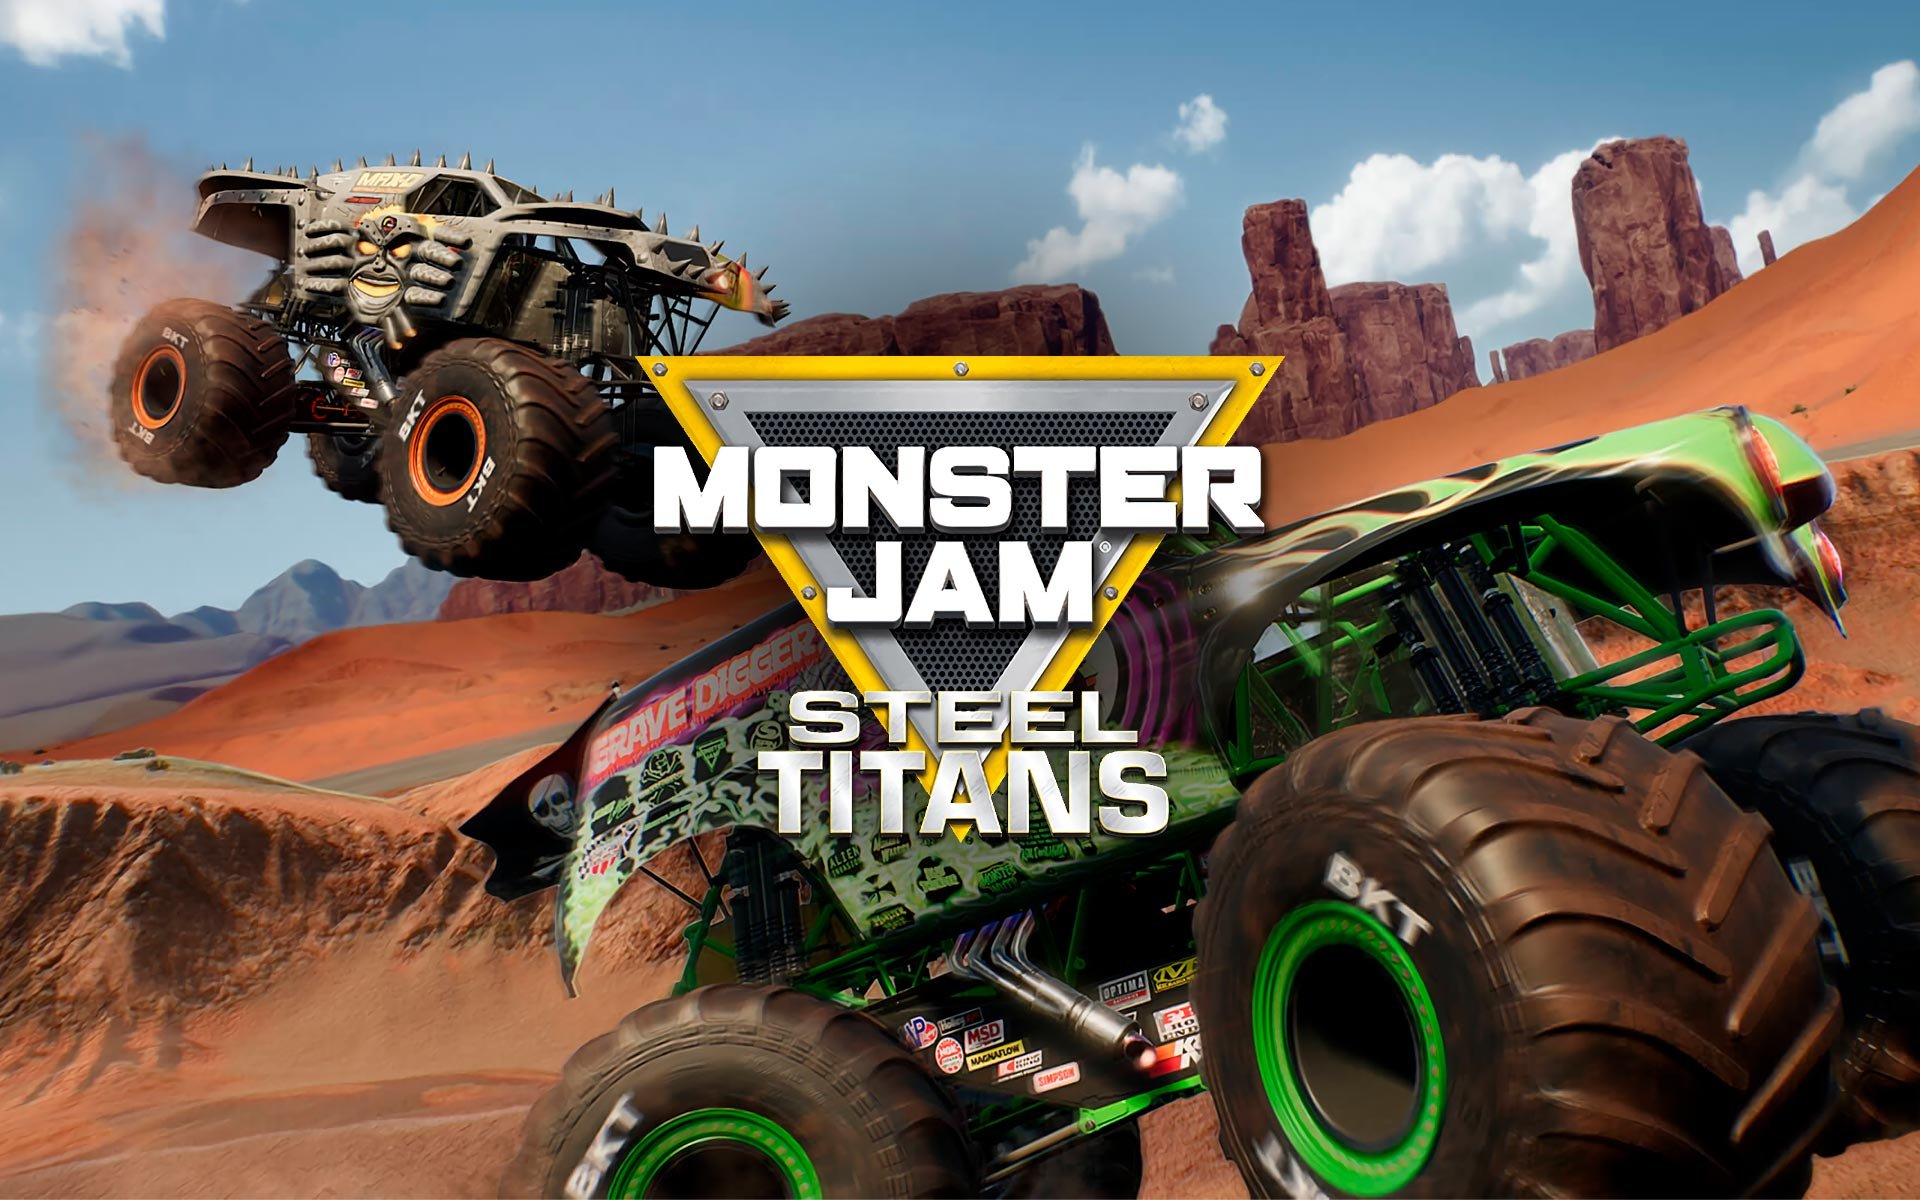 NOVO JOGO DE CORRIDA de MONSTER TRUCK! - Monster Jam Steel Titans